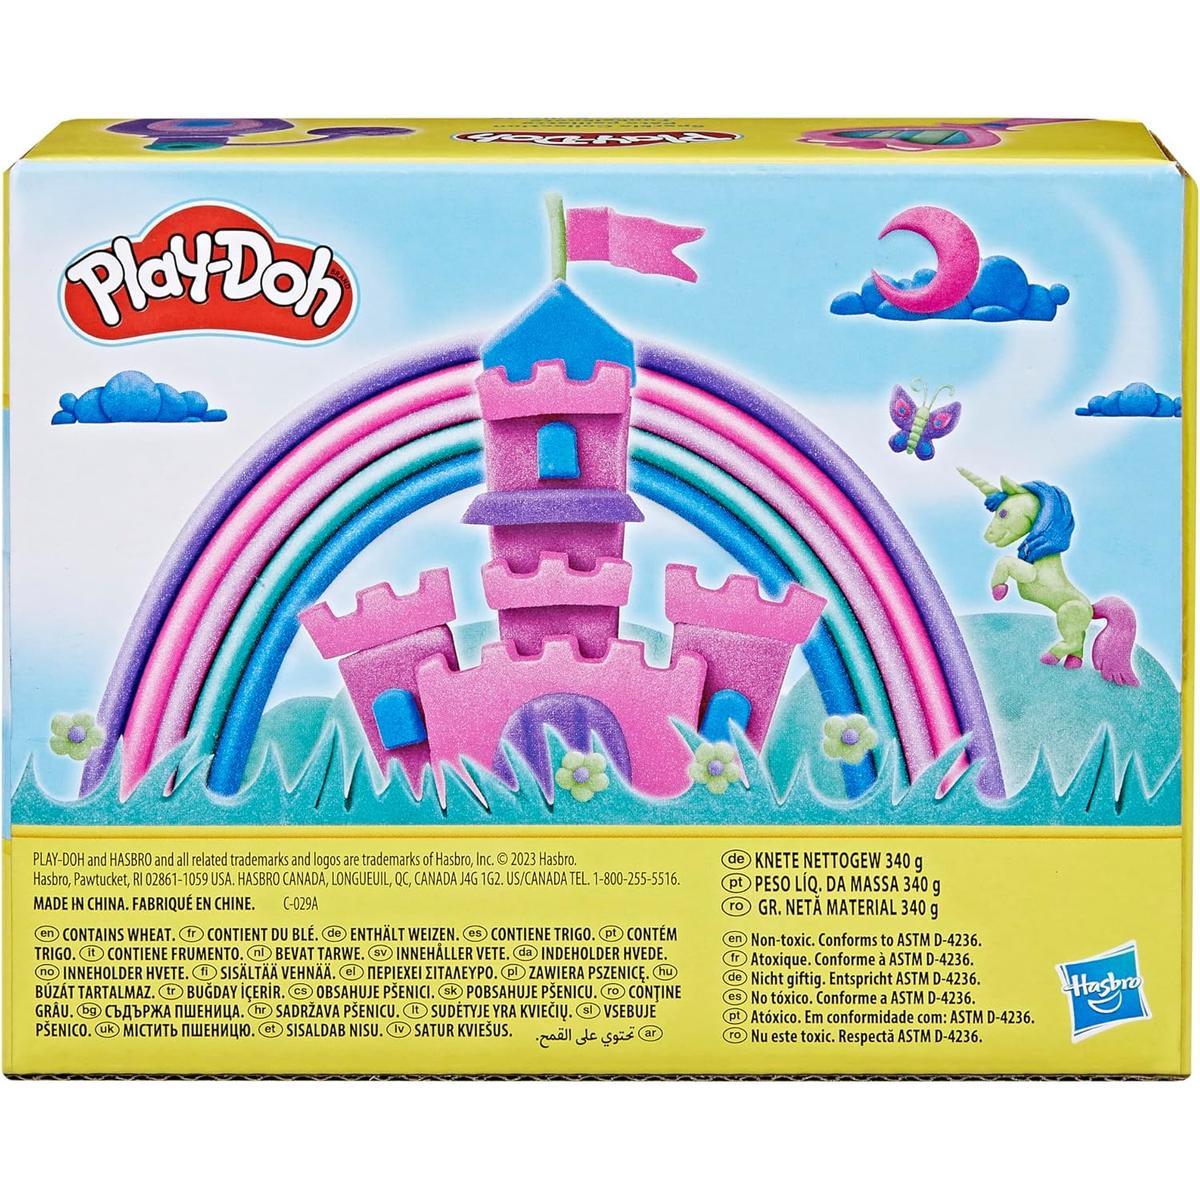 Play-Doh Sparkle błyszcząca ciastolina zestaw kolorowych tub 6-pak F9932 nr. 4